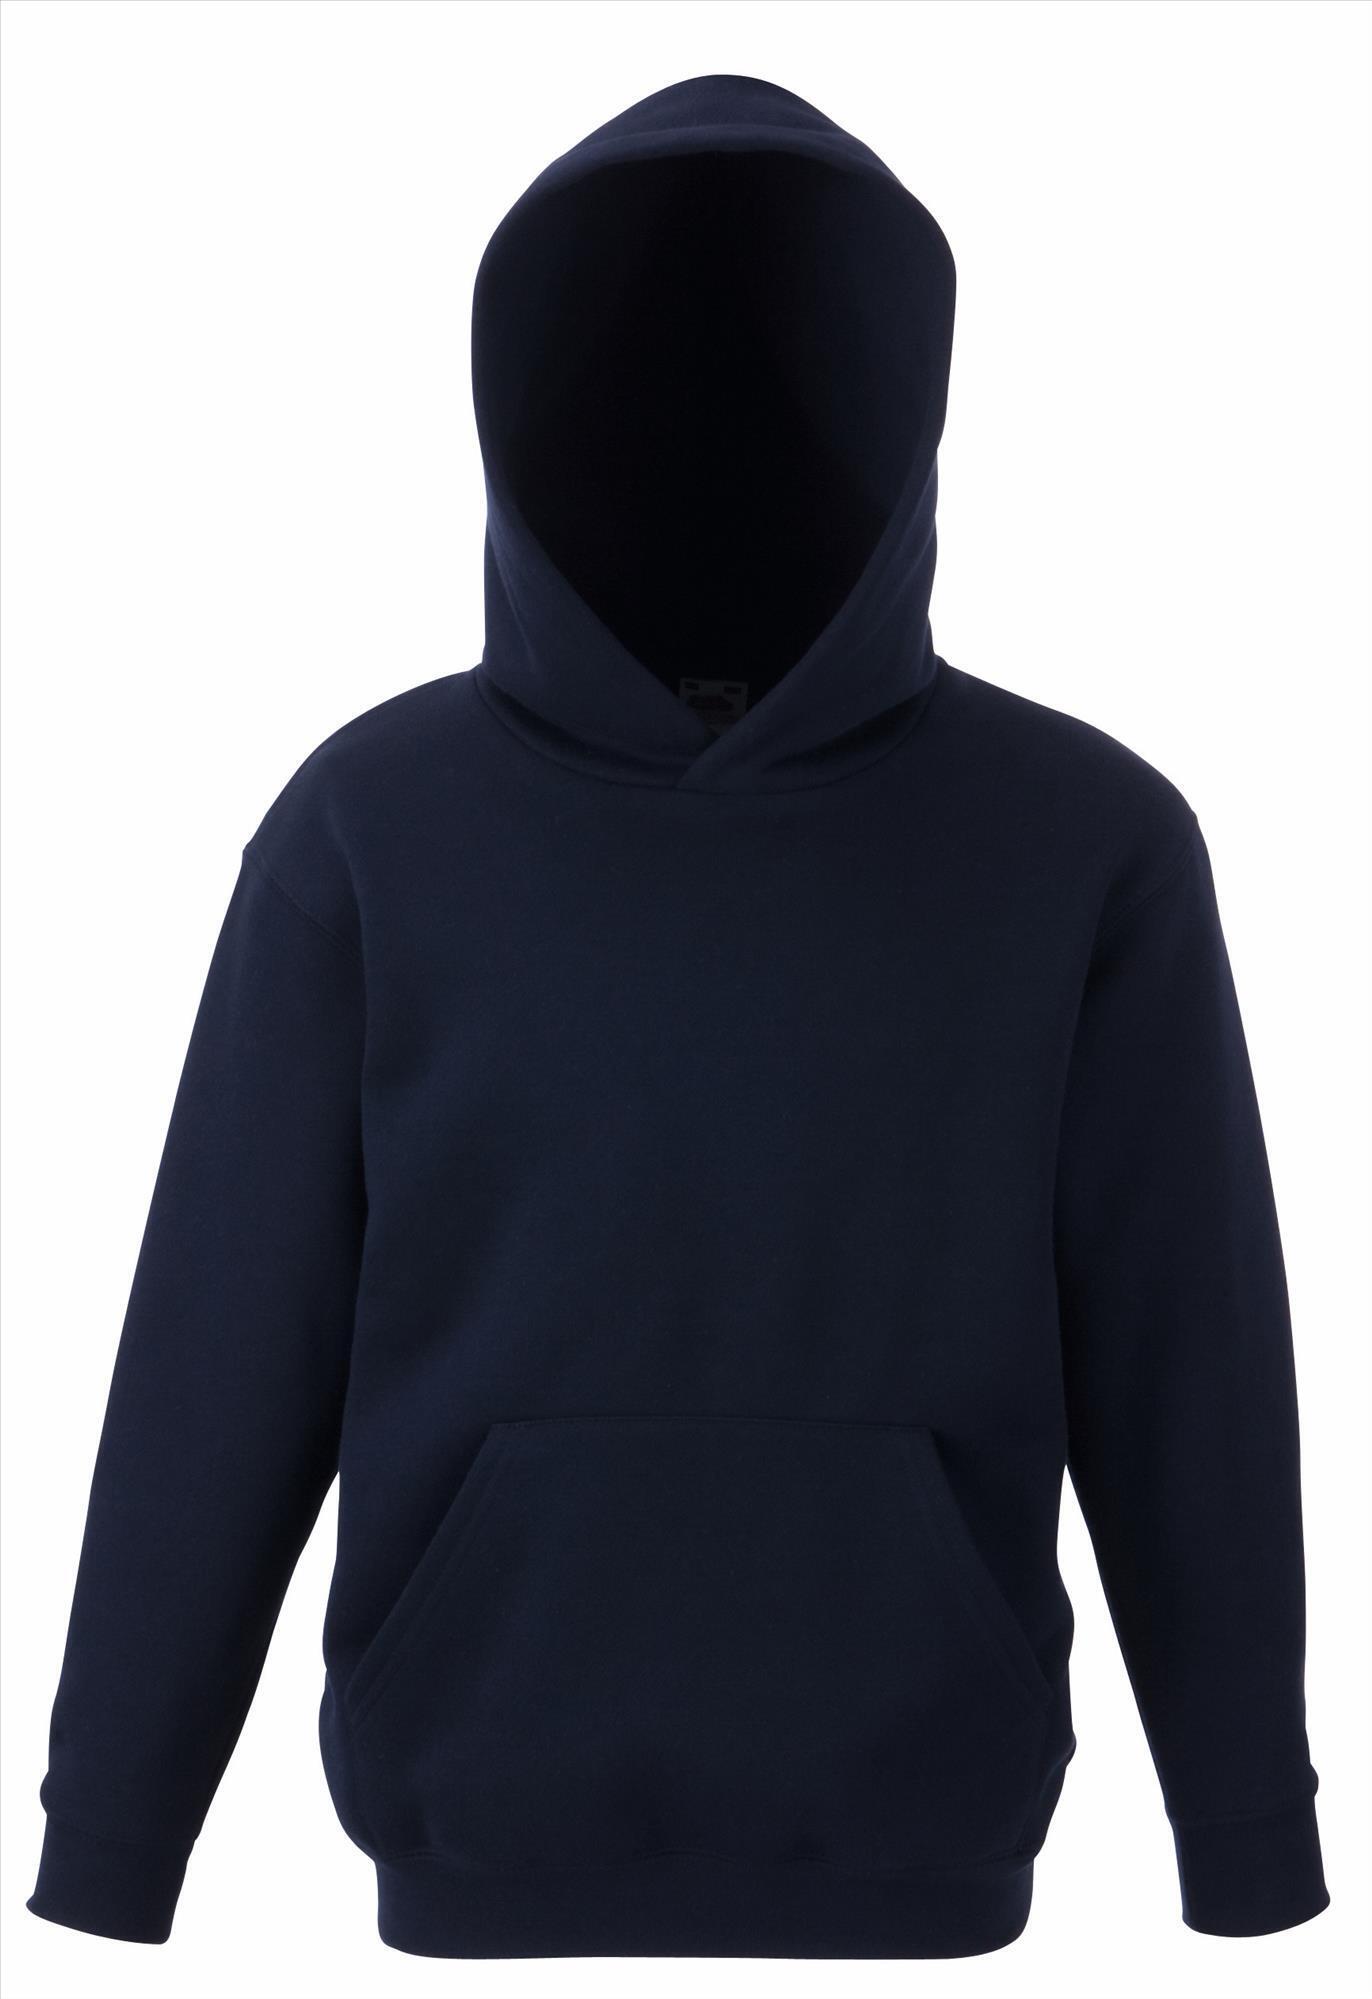 Kinder hoodie sweater met gevoerde capuchon donkerblauw